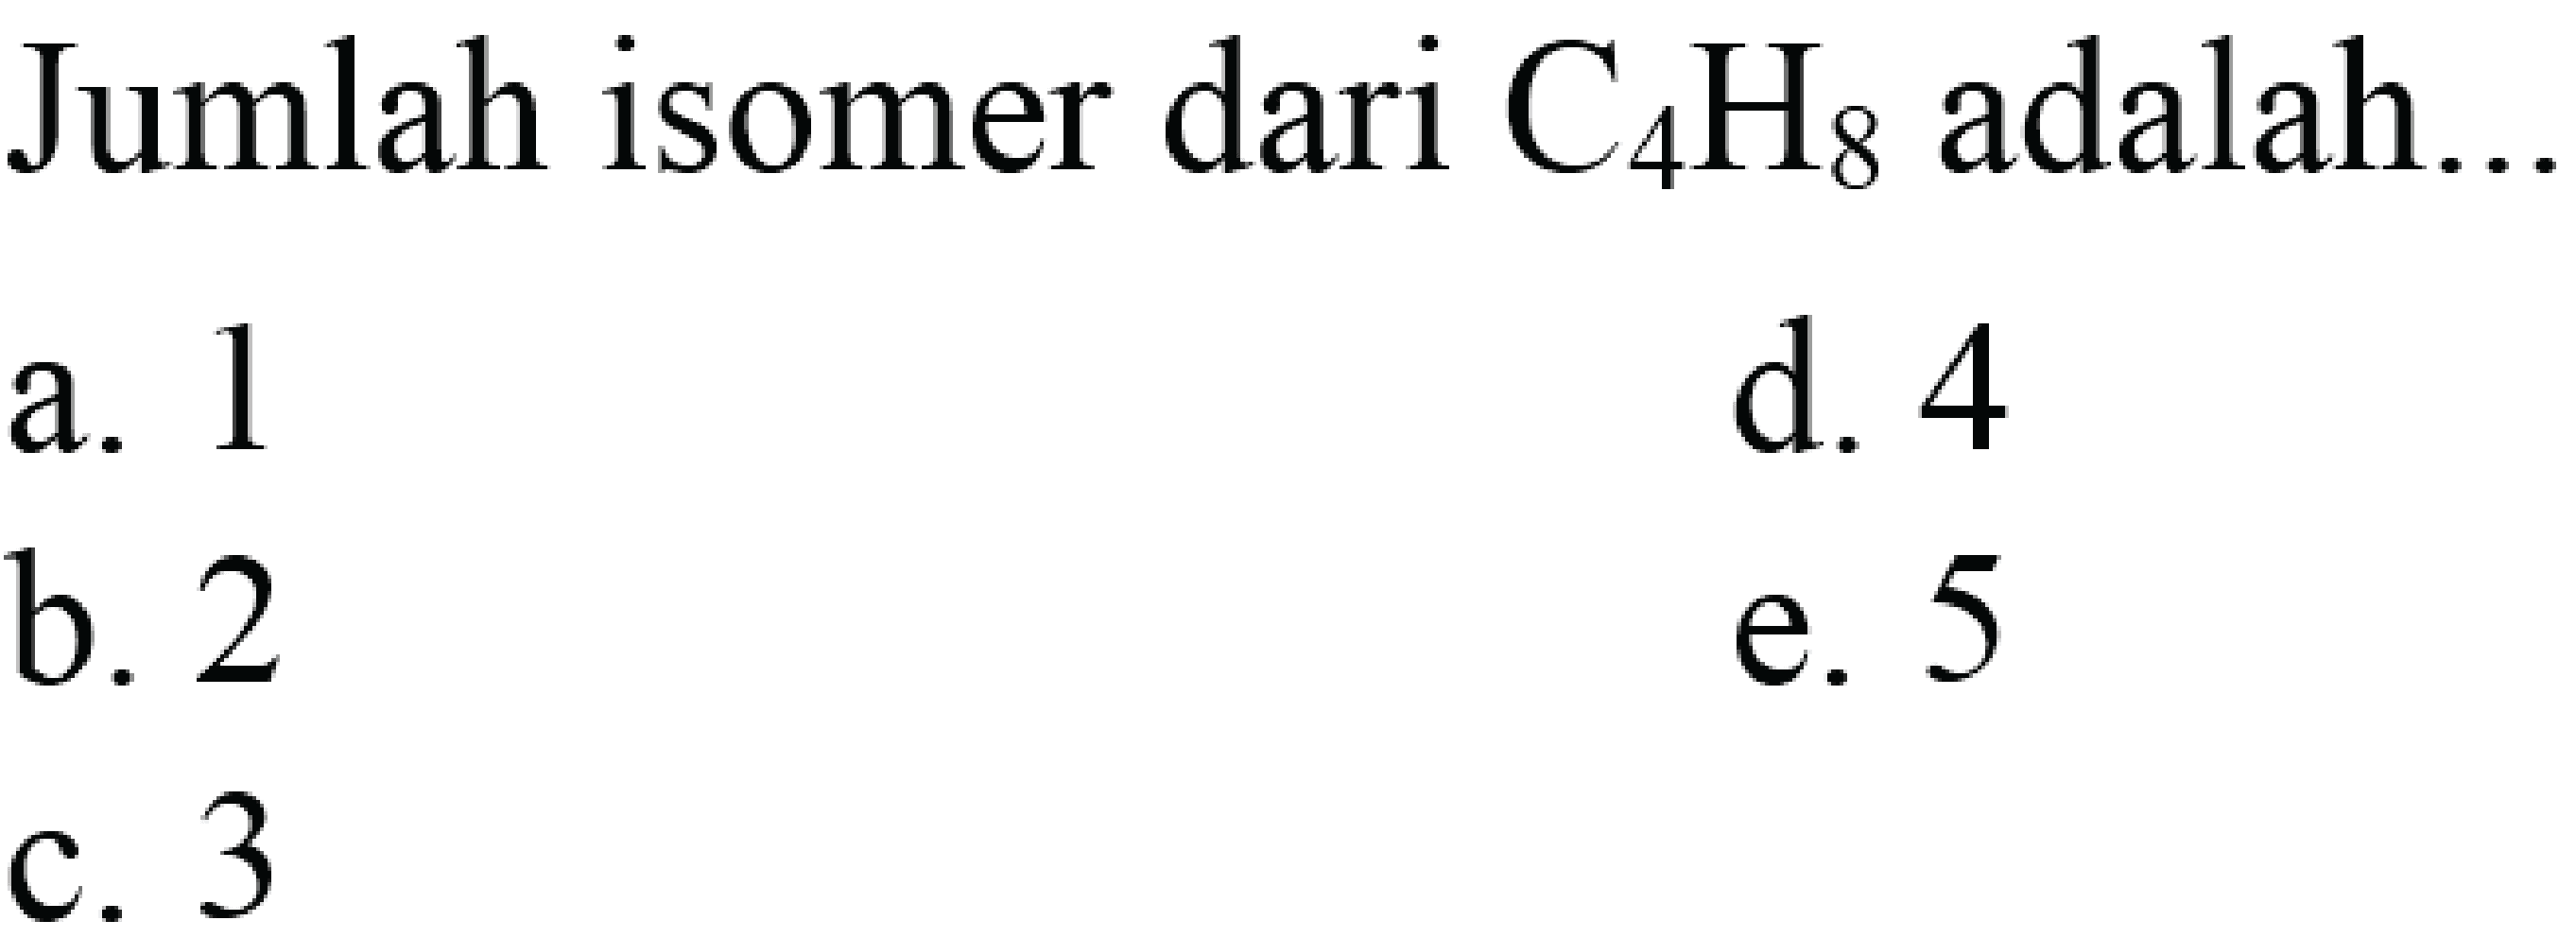 Jumlah isomer dari  C4H8  adalah...